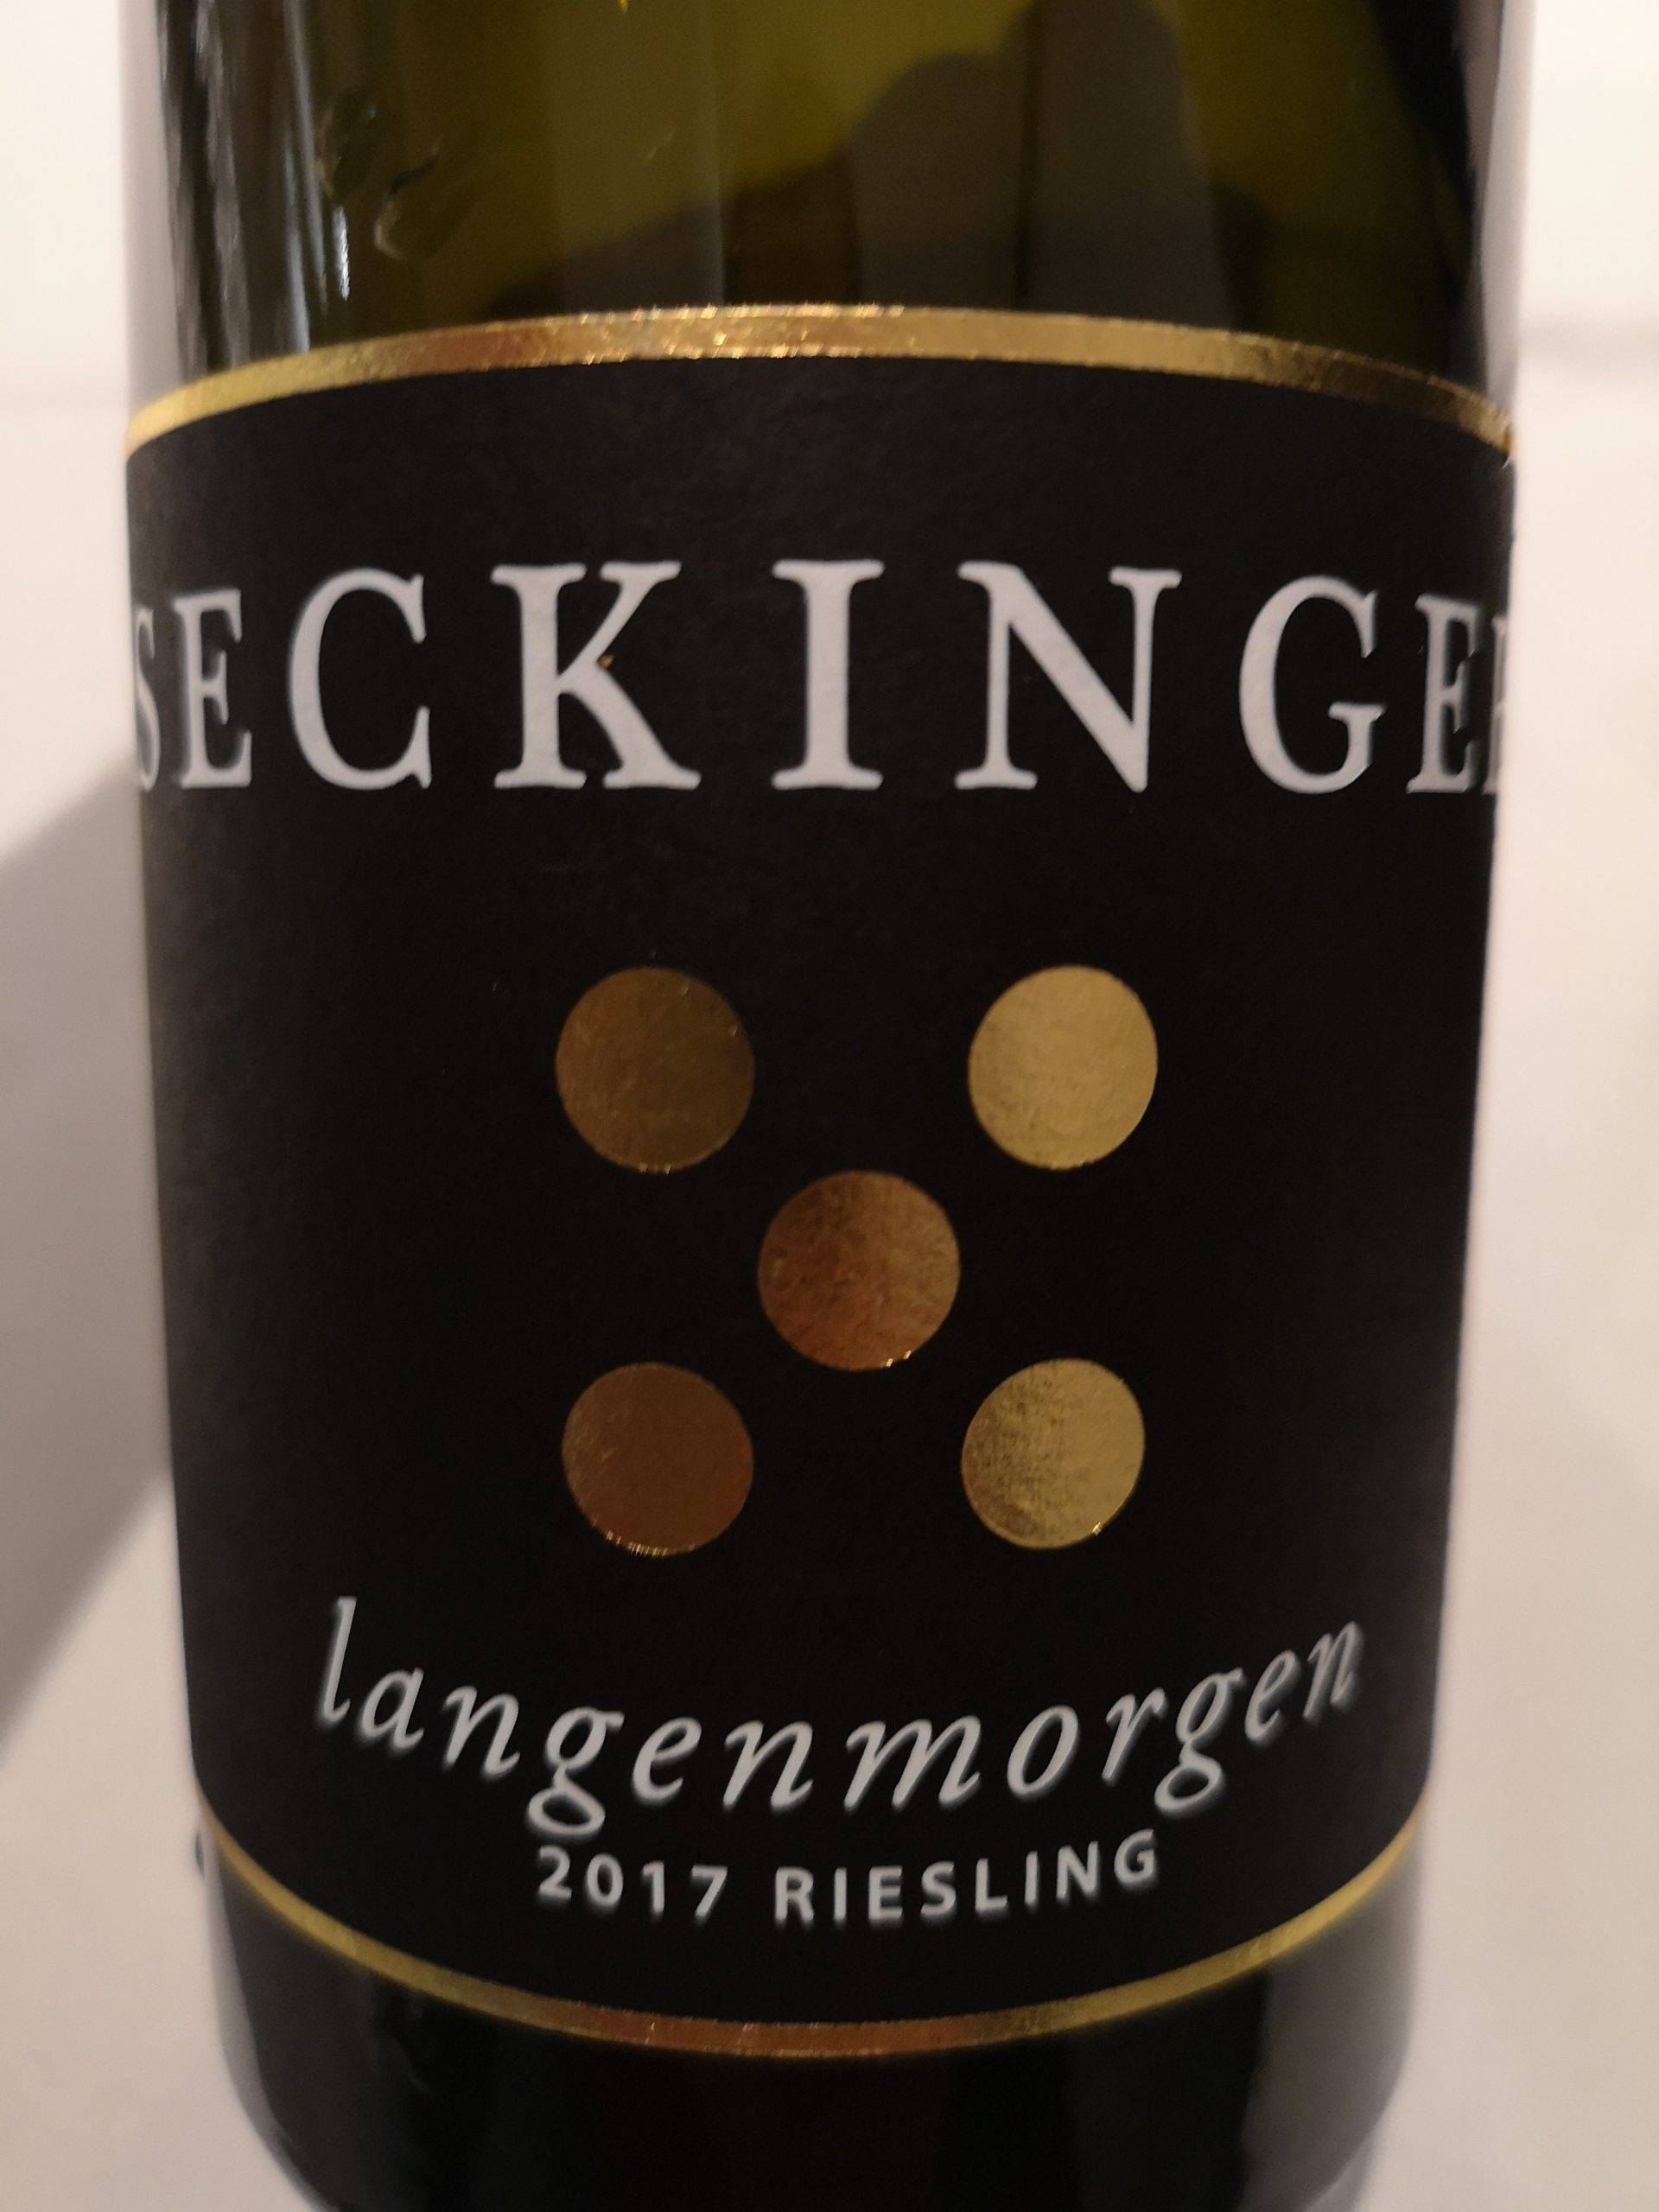 2017 Riesling Langenmorgen | Seckinger